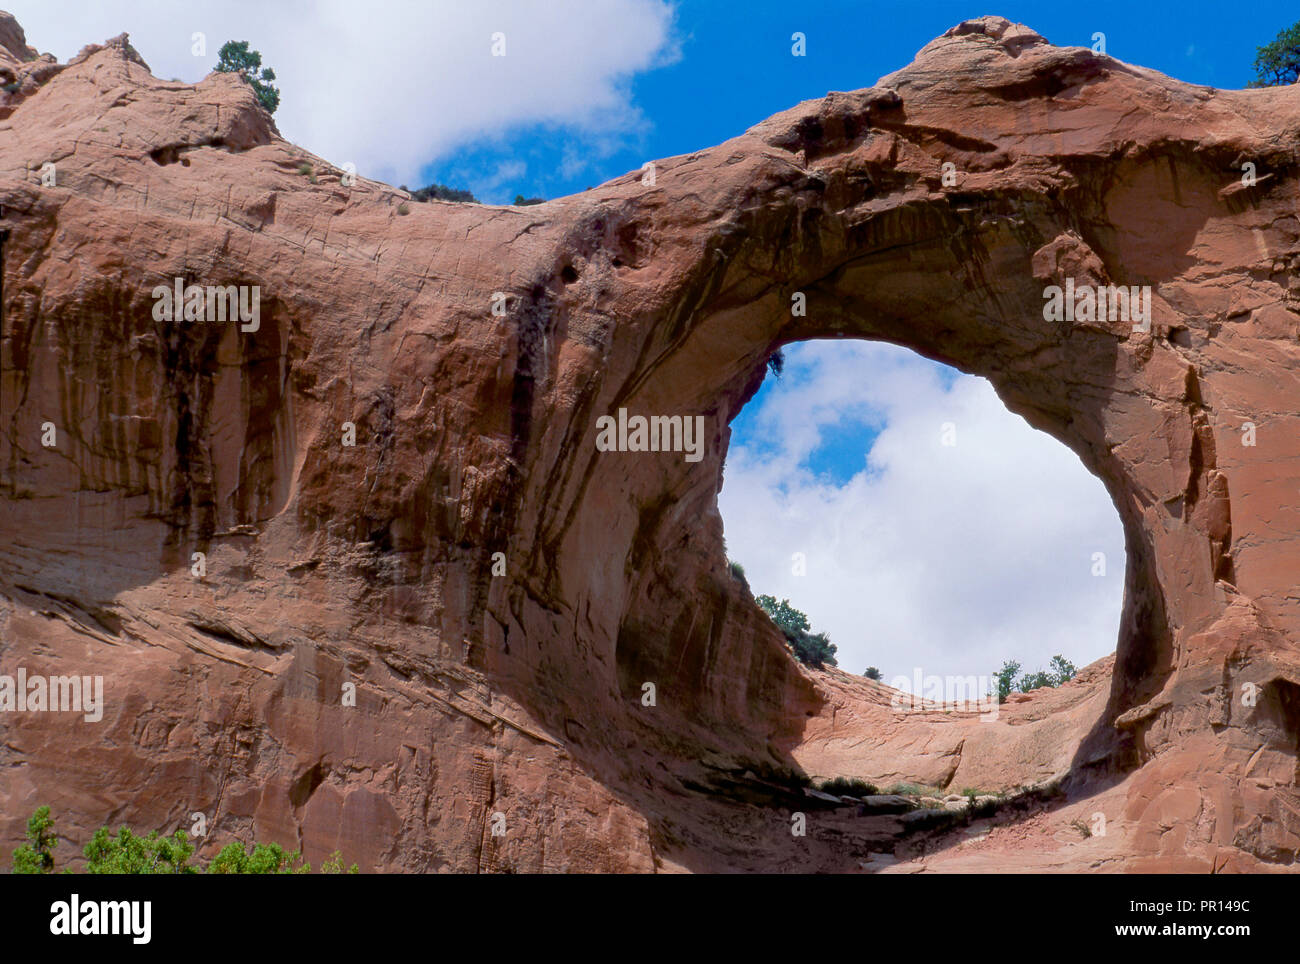 Natural Arch von Window Rock, Arizona, Navajo Nation Wahrzeichen. Foto Stockfoto